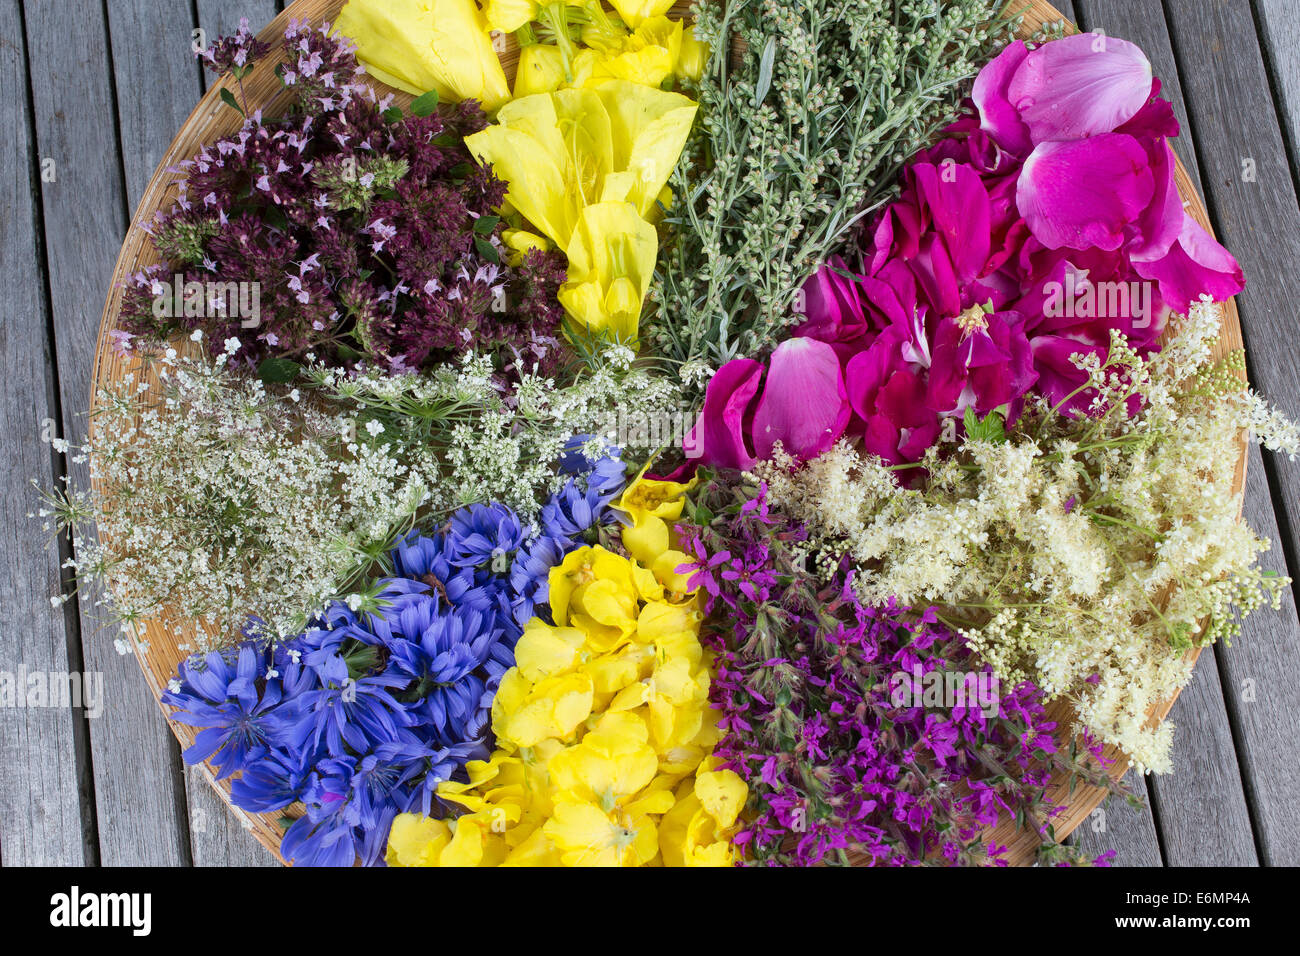 Blütenteller, Blüten, Blumen, Kräuter Kräuter, Kräuterernte Blütenblätter, Debussy, auf einem Teller sortiert zum Trocknen, essb Banque D'Images